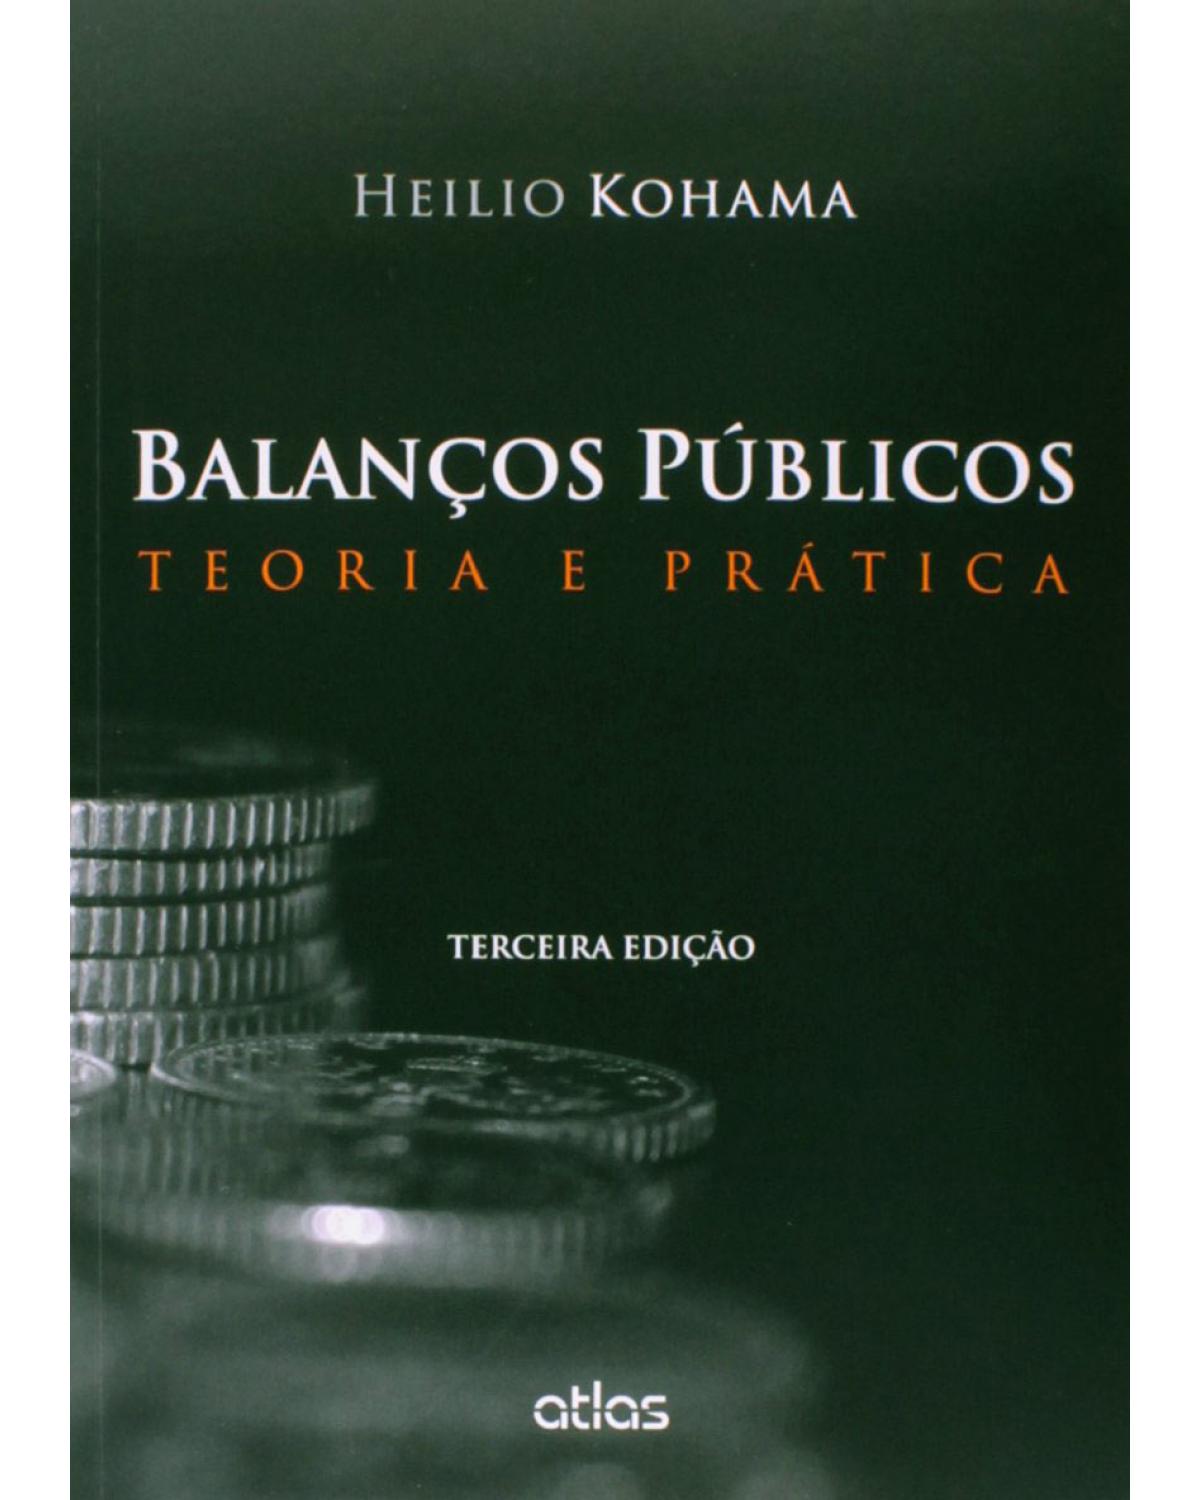 Balanços públicos - Teoria e prática - 3ª Edição | 2015